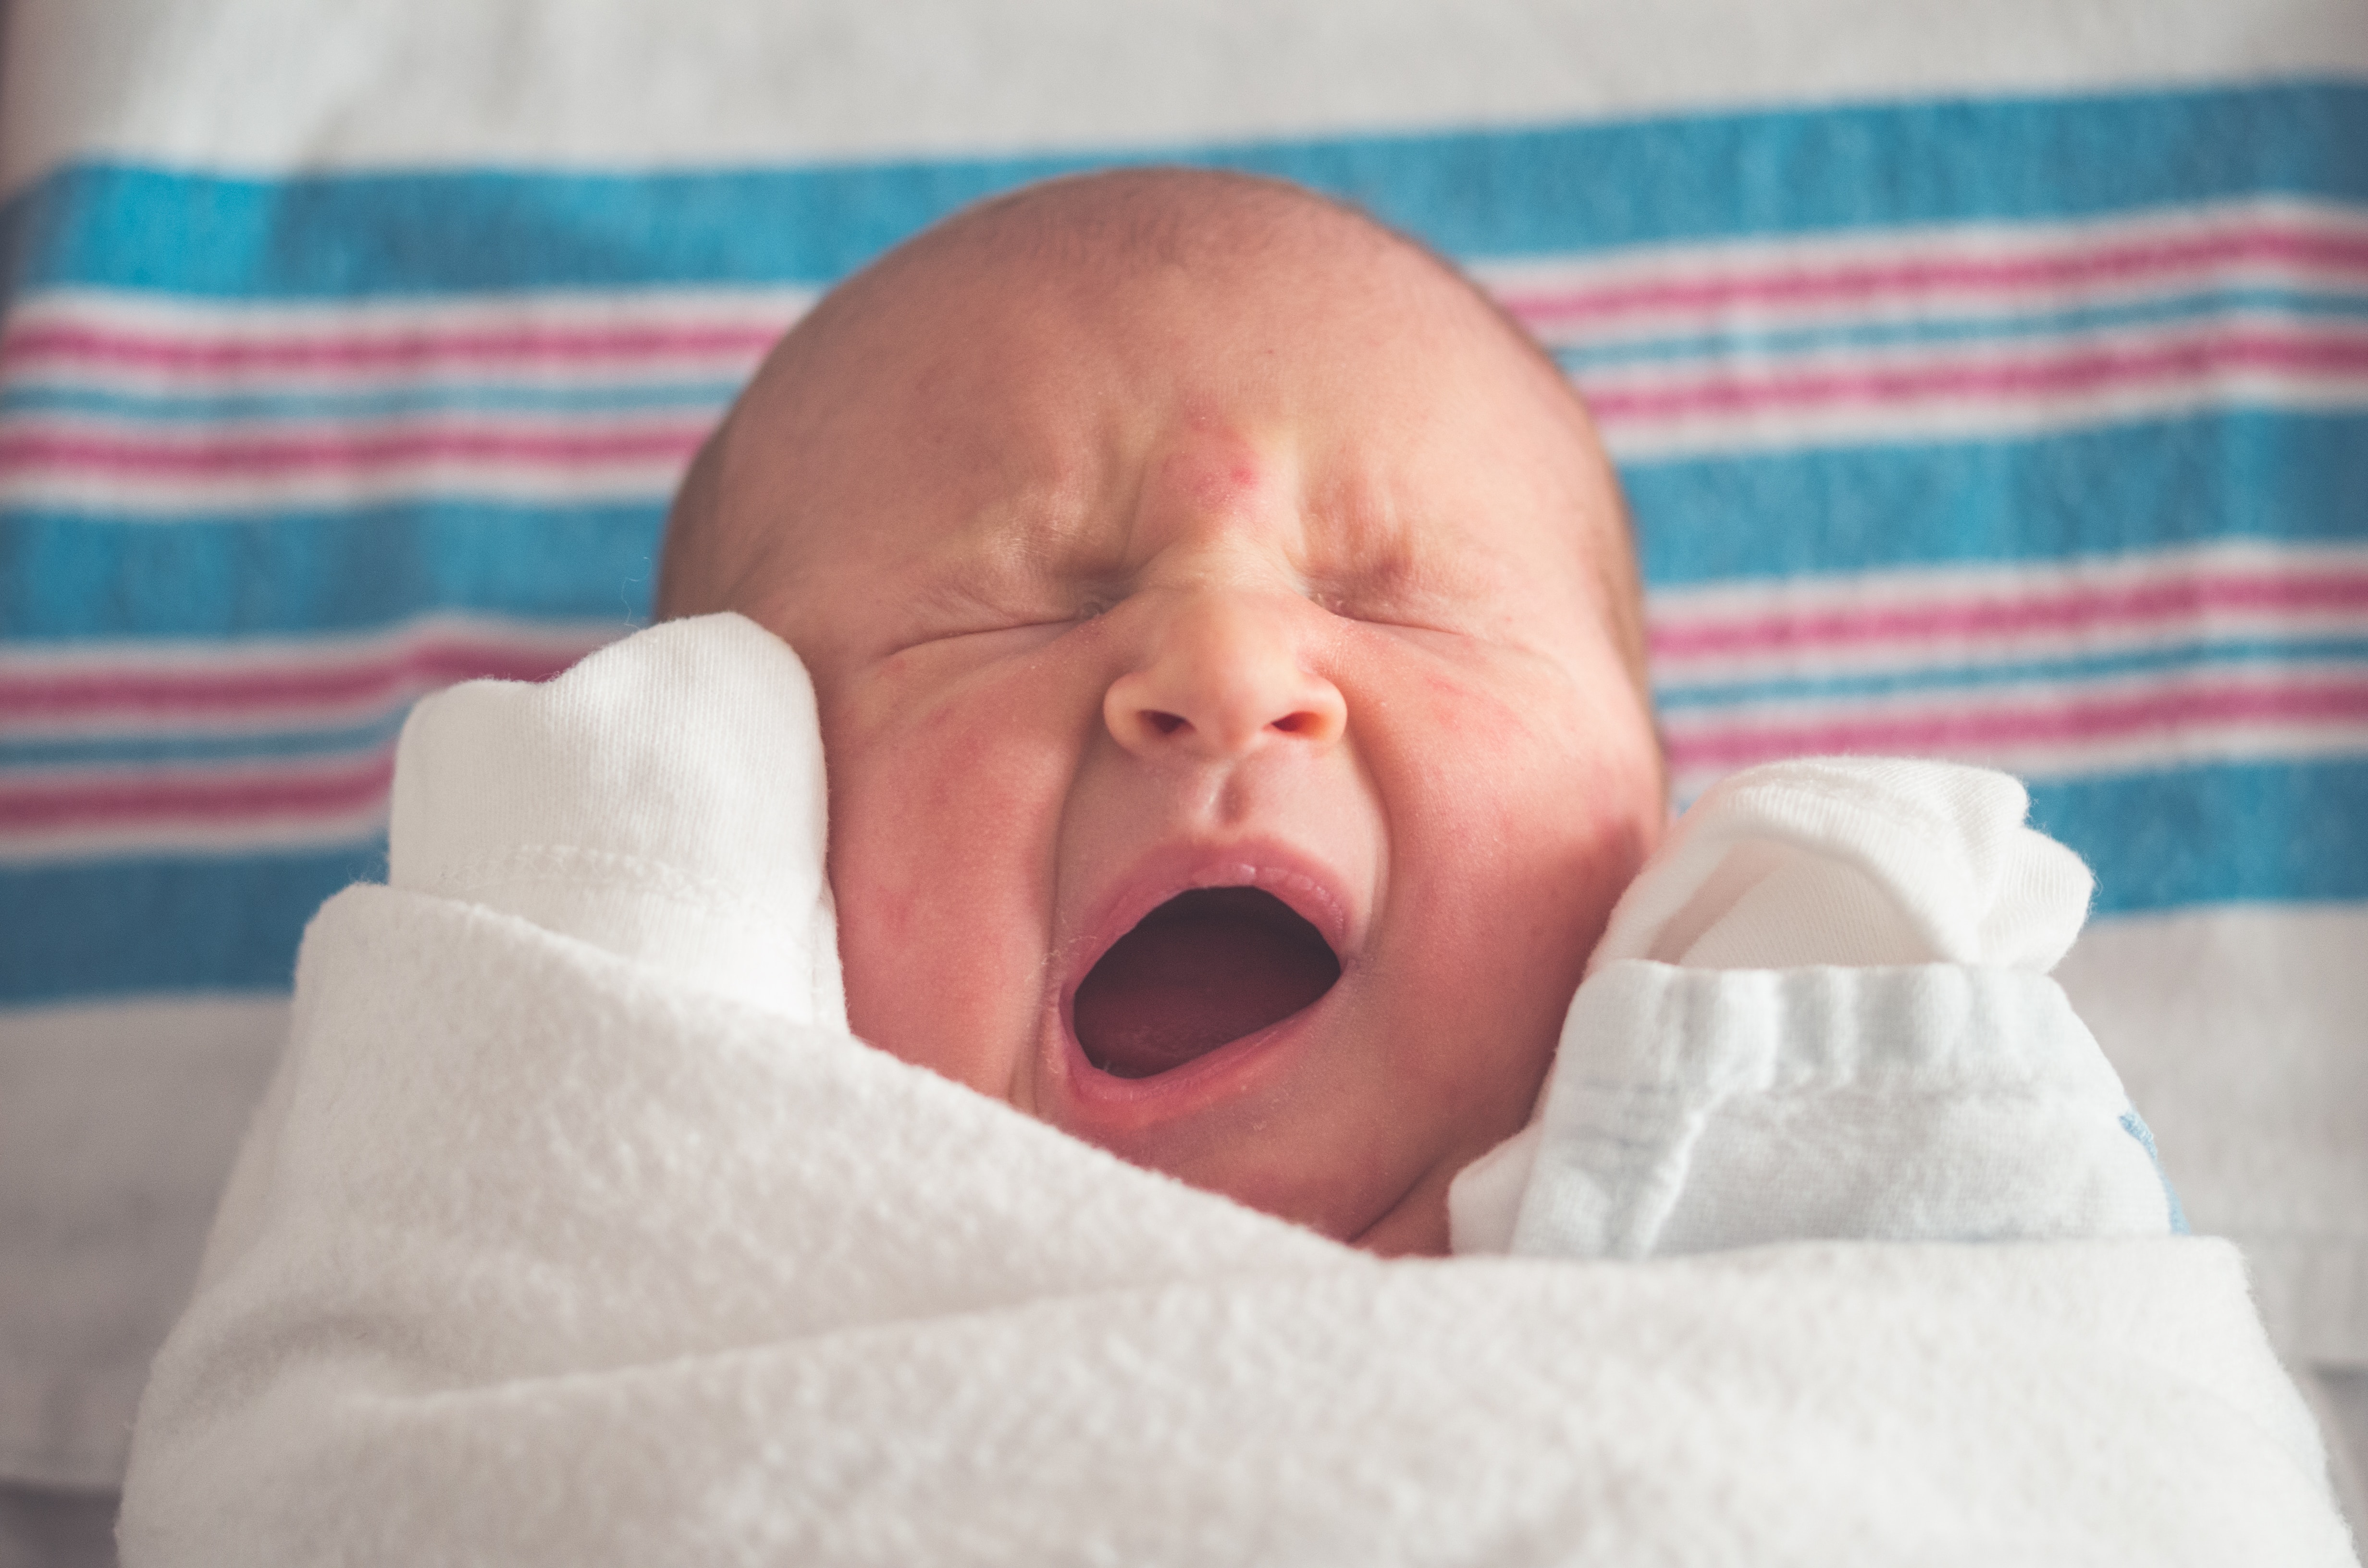 Newborn baby. | Source: Unsplash